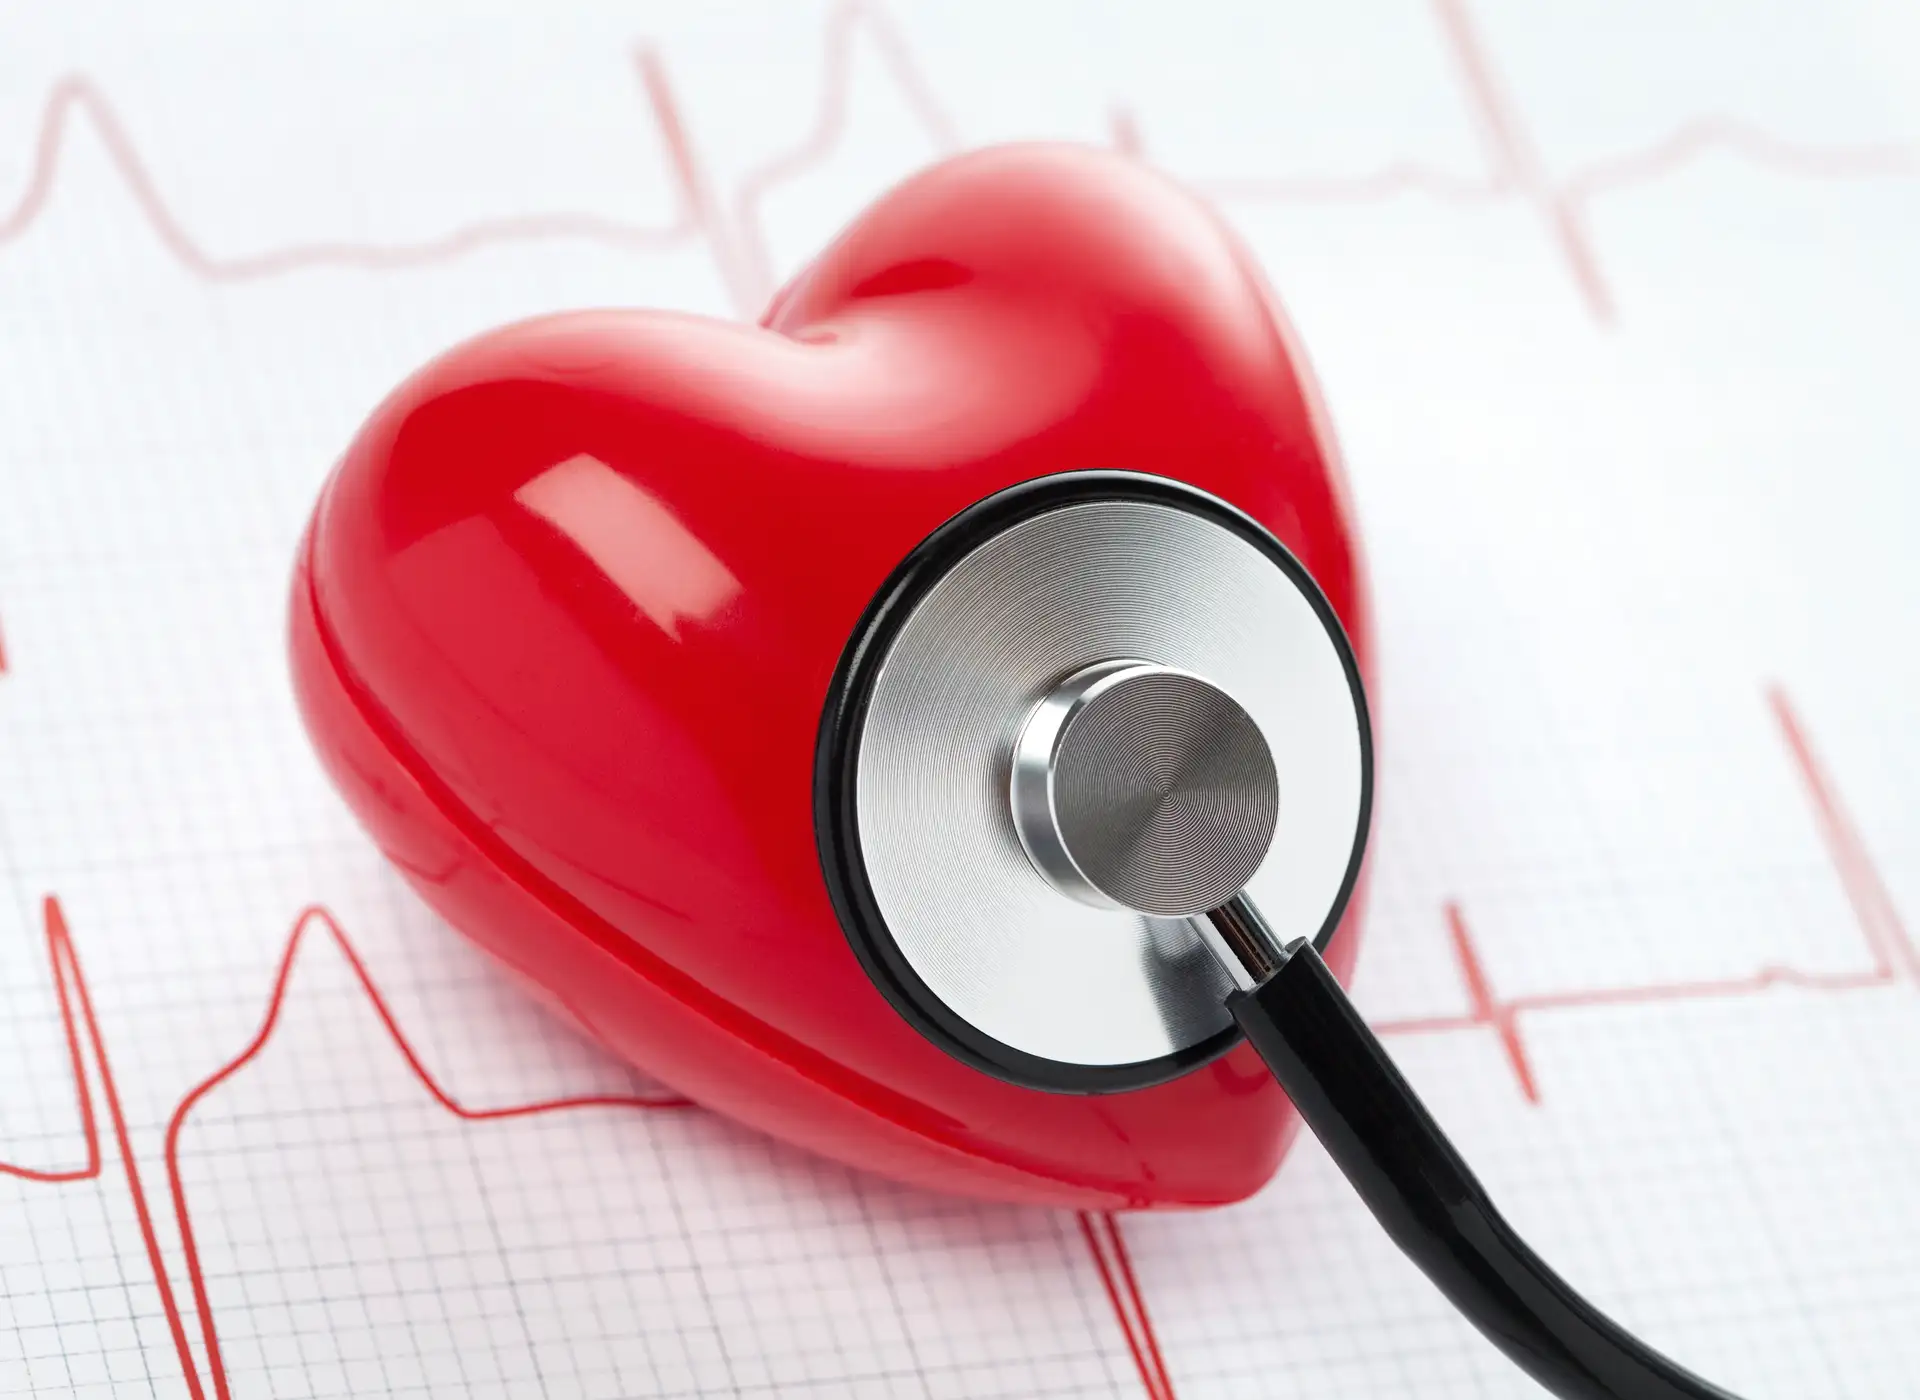 serce badane stetoskopem z wynikiem ekg w tle